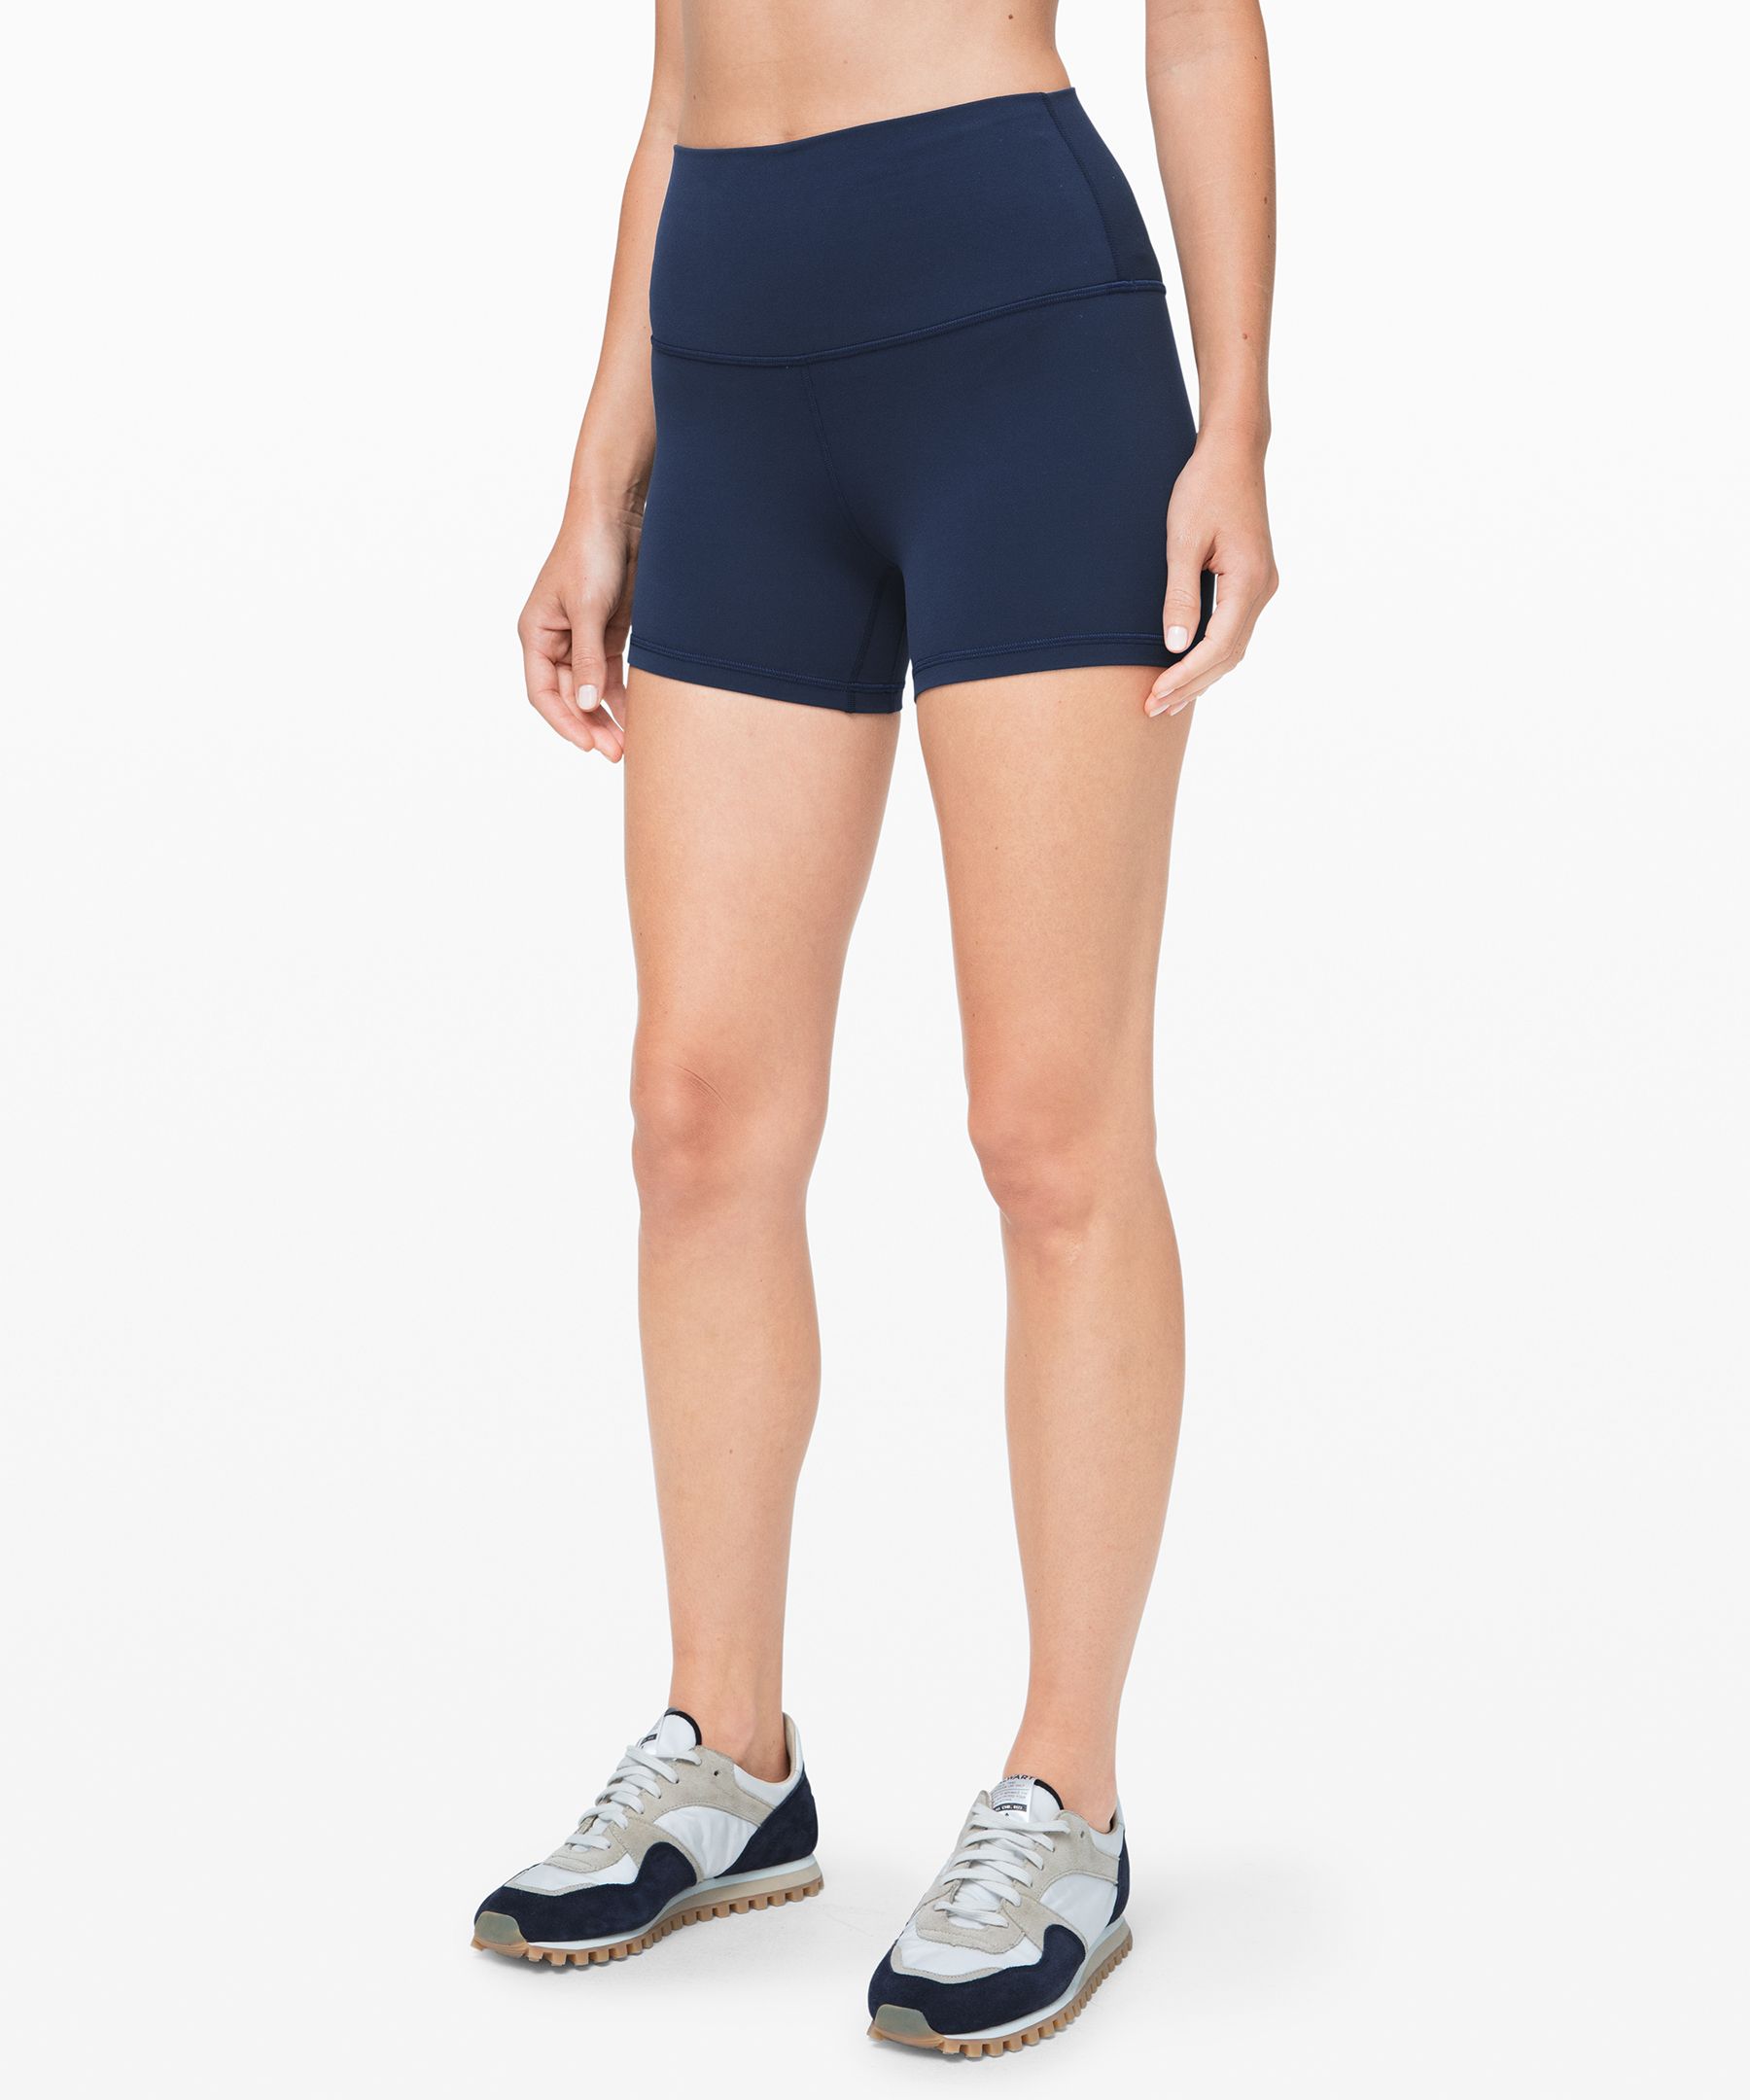 lululemon Align™ High-Rise Short 4, Women's Shorts, lululemon